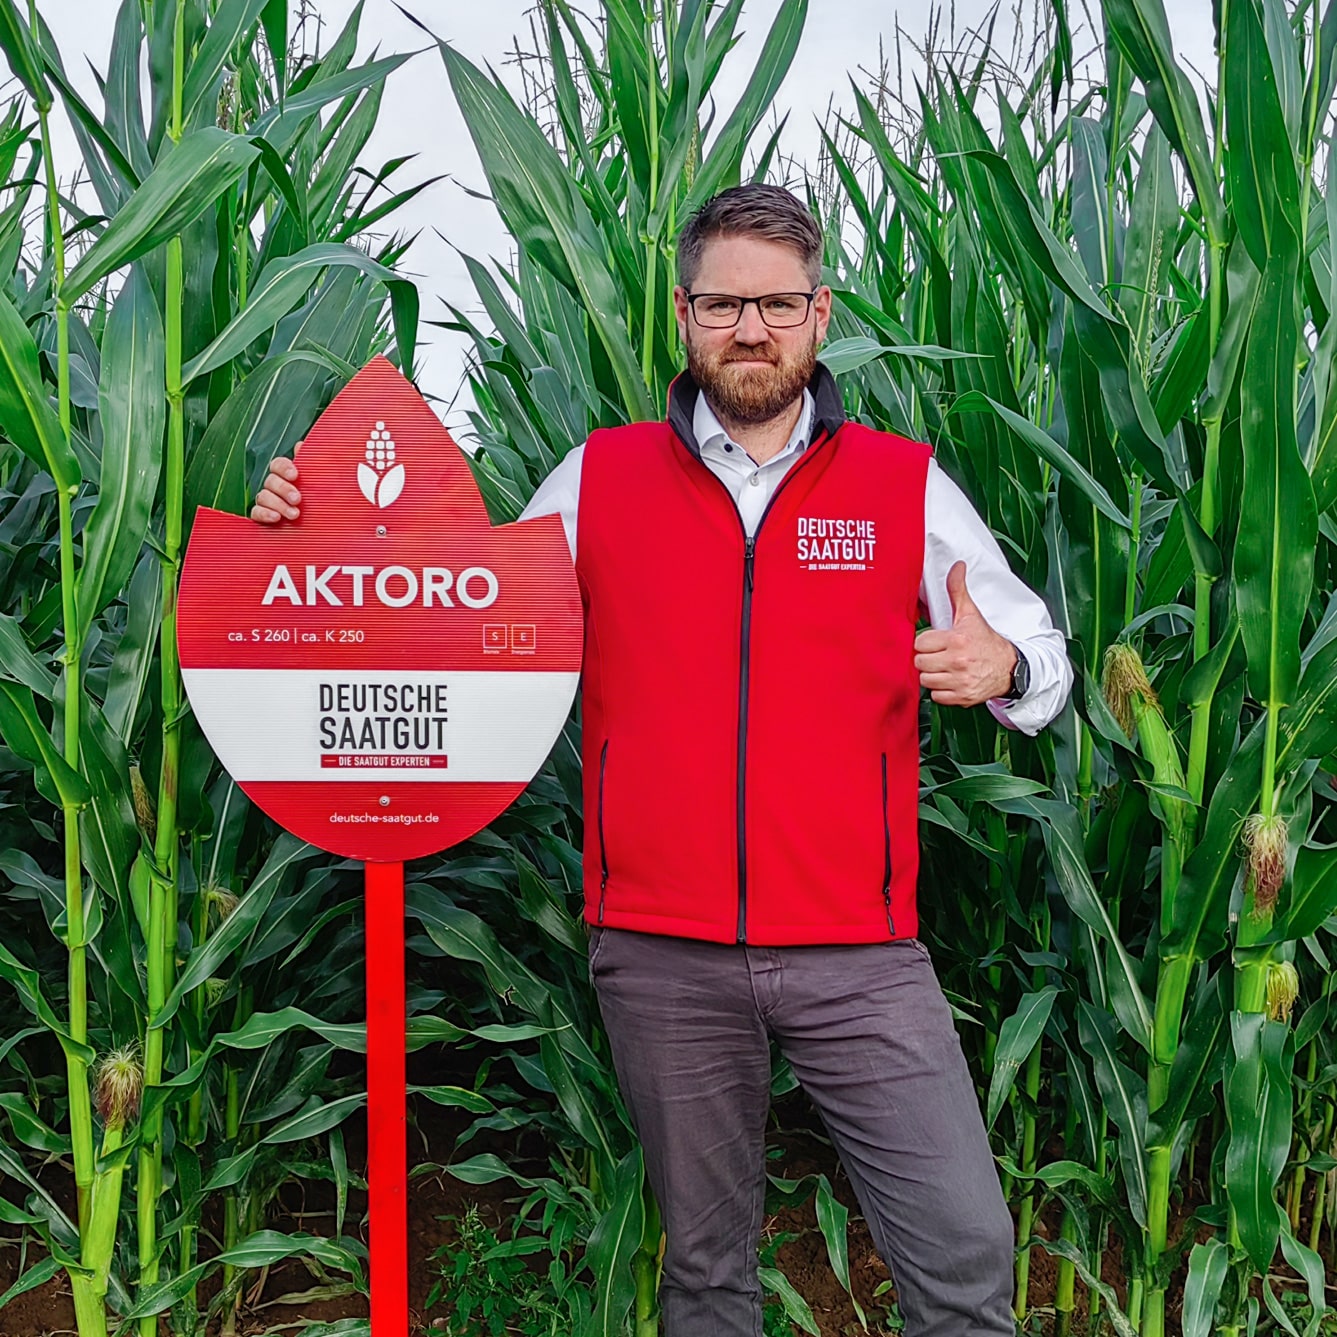 AKTORO – Die neuste Maishybride im mittelspäten Reifebereich für Silo- und Biogasertrag!